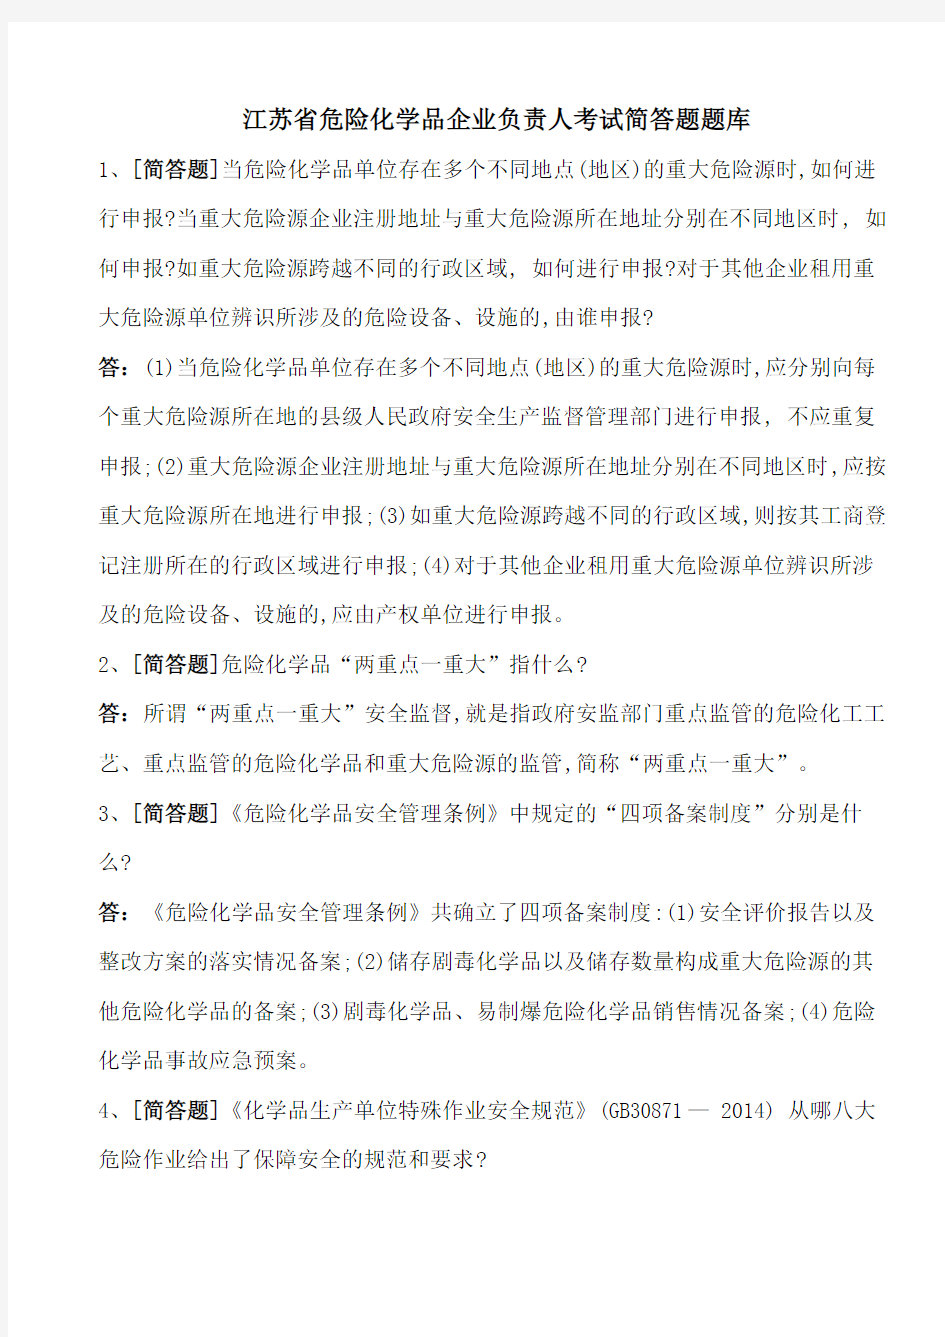 2018年江苏省危险化学品企业负责人考试简答题题库(103道题)